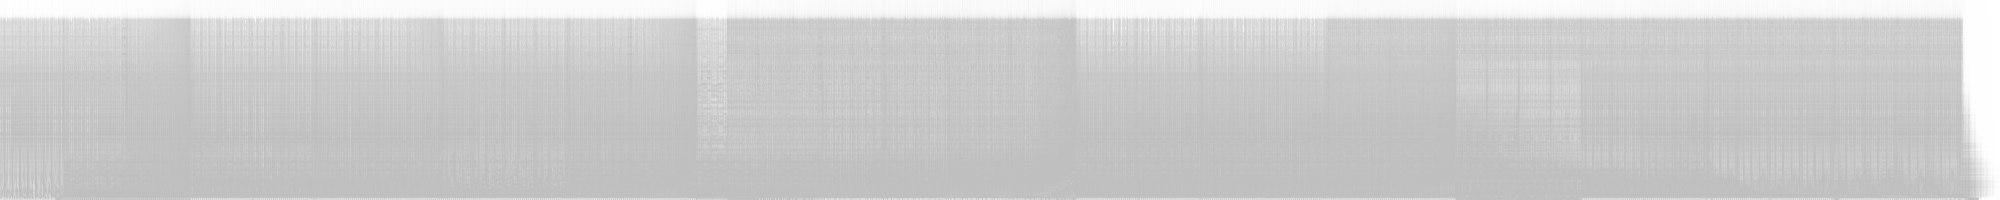 Spectrogram for Curlwond - Breeze My Mind RMX